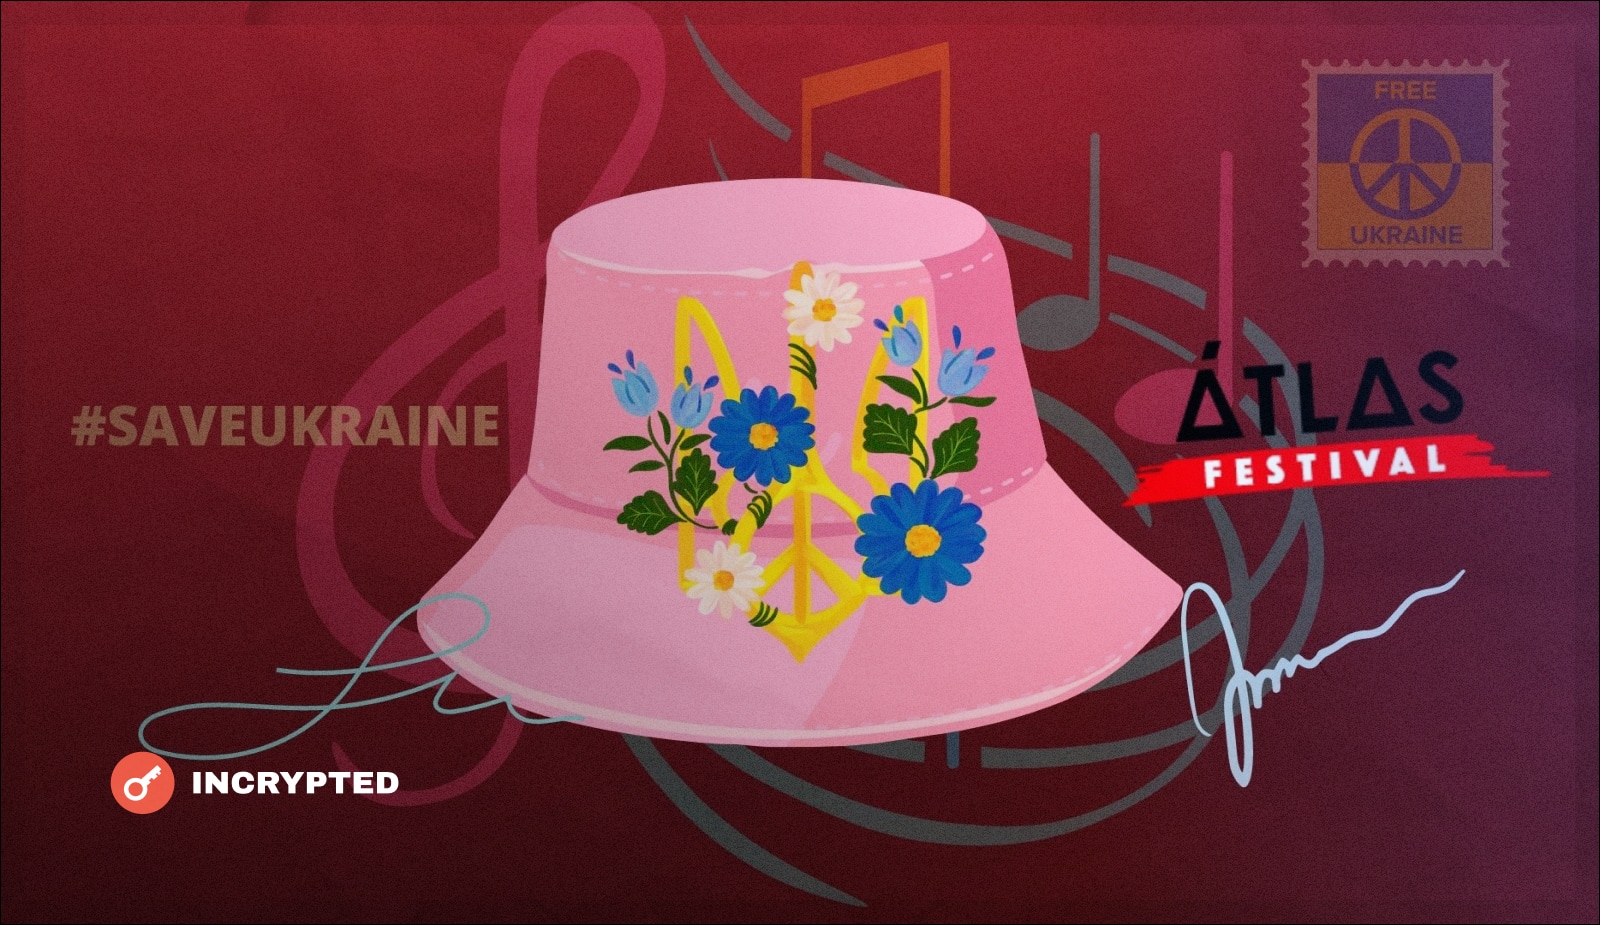 Binance NFT и топ-12 украинских исполнителей запускают совместную благотворительную коллекцию. Заглавный коллаж новости.